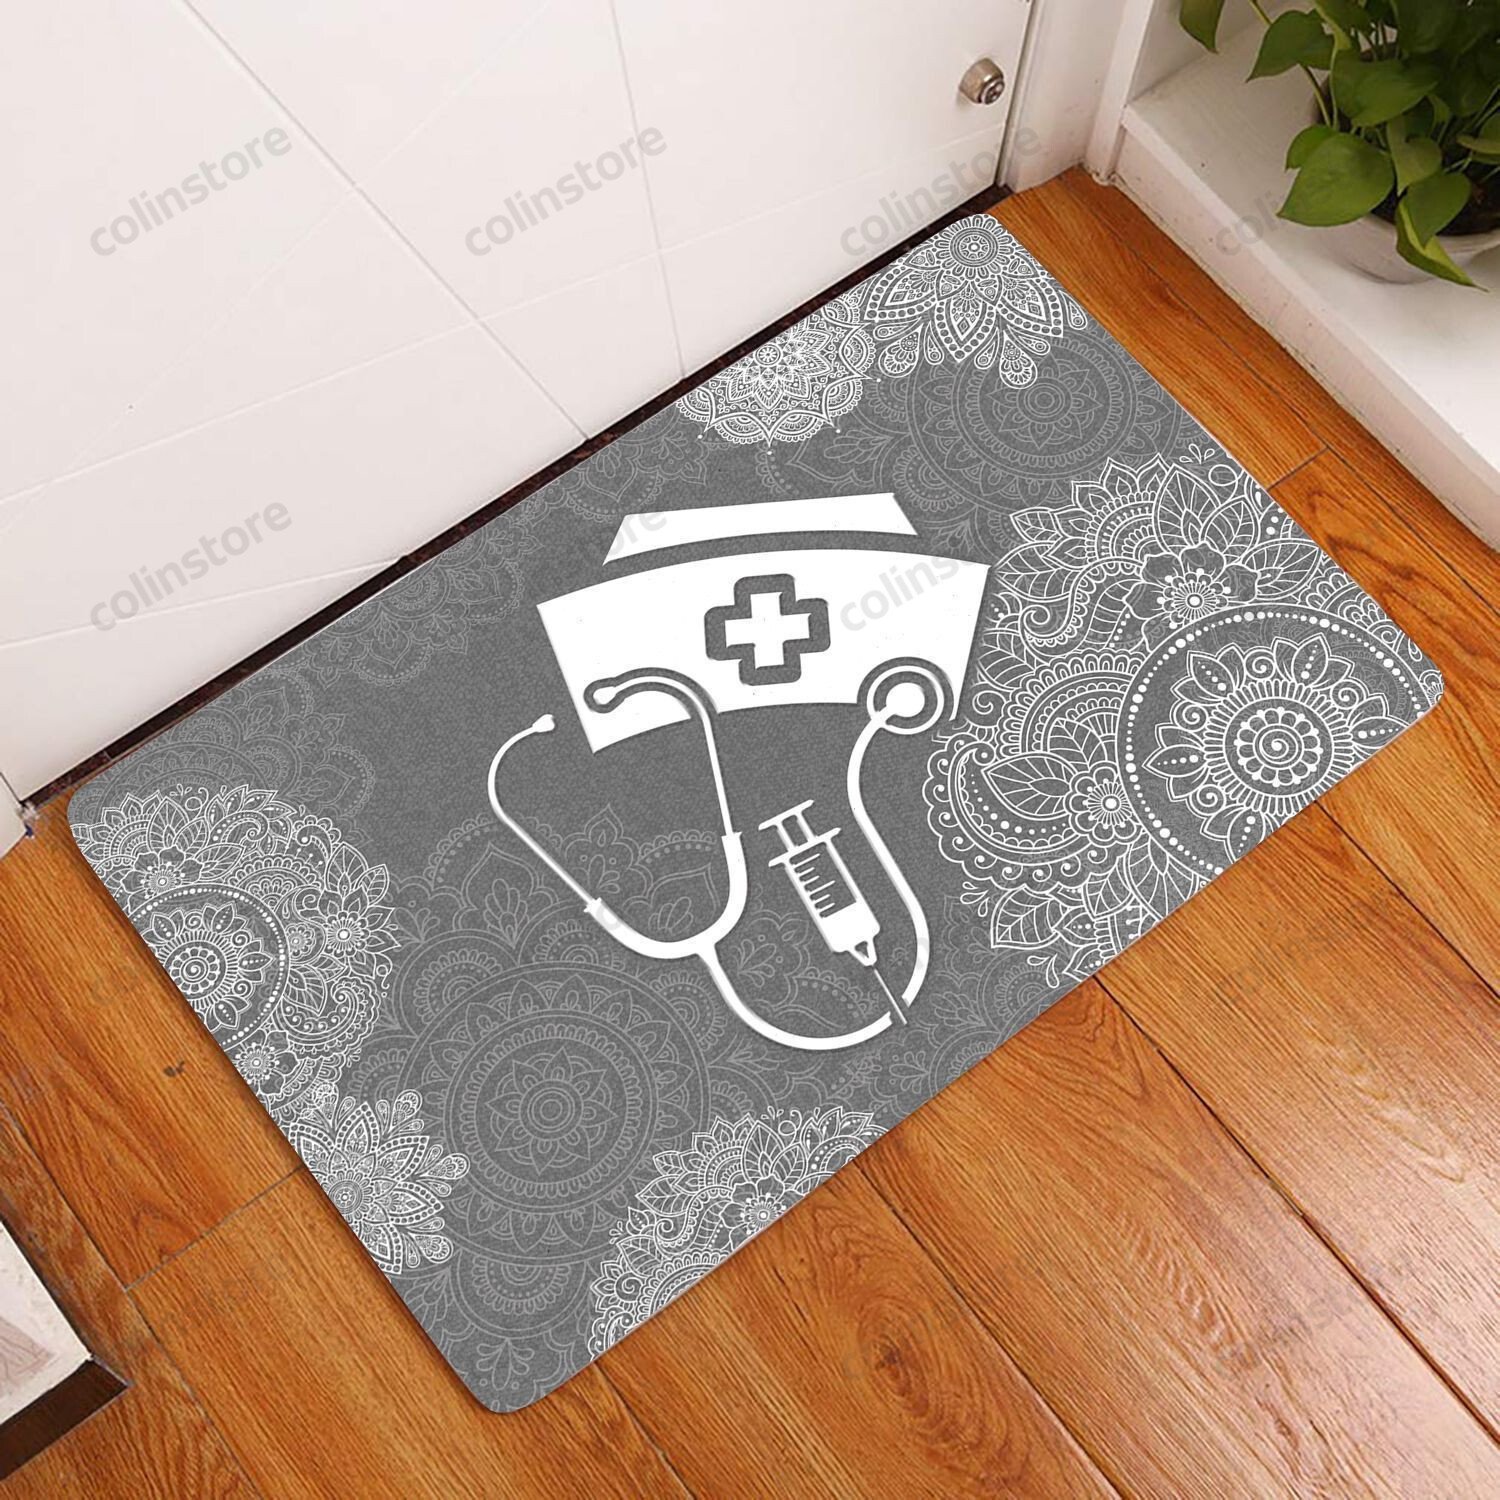 Amazing Nurse Doormat Welcome Mat